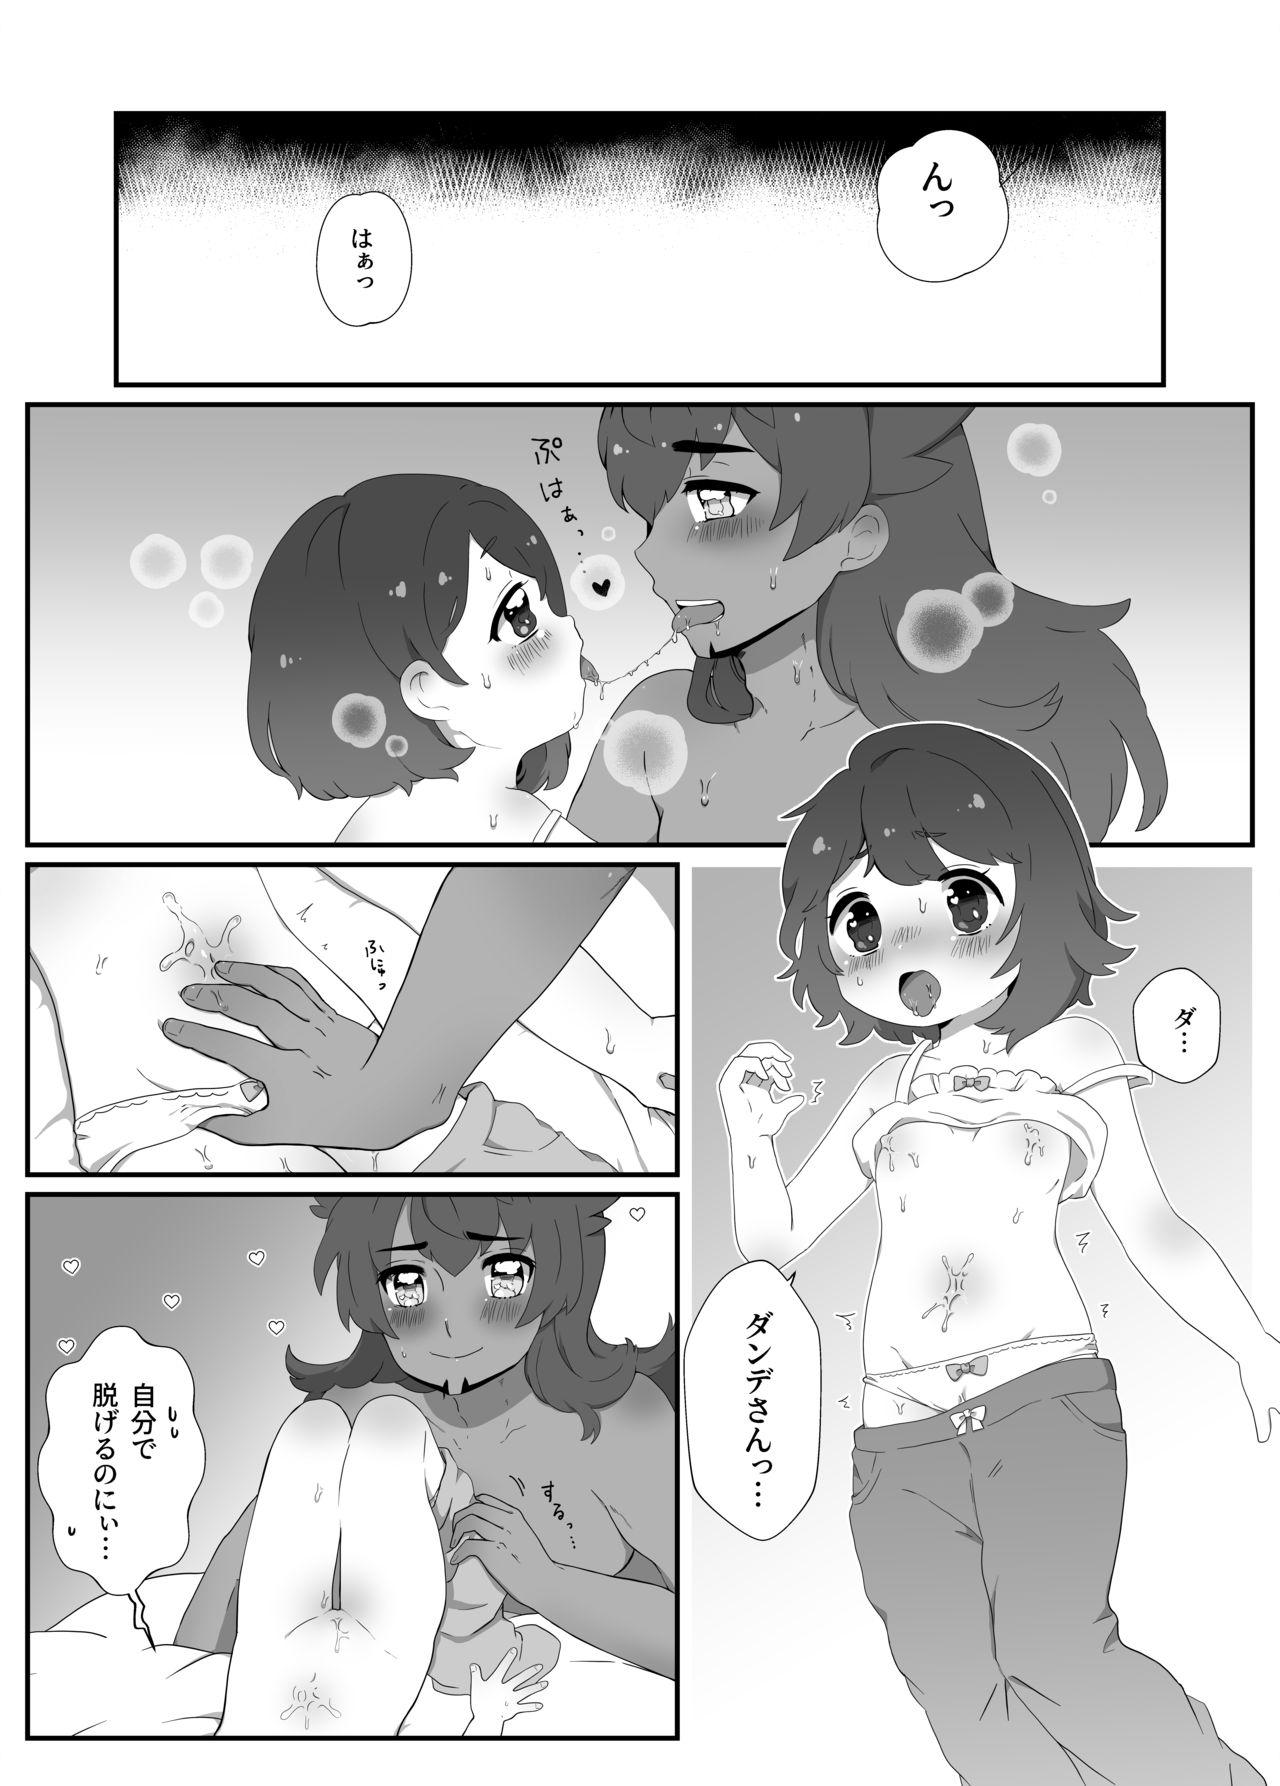 Peituda Daisukidakara Daijoubu! - Pokemon | pocket monsters Gay Facial - Page 2